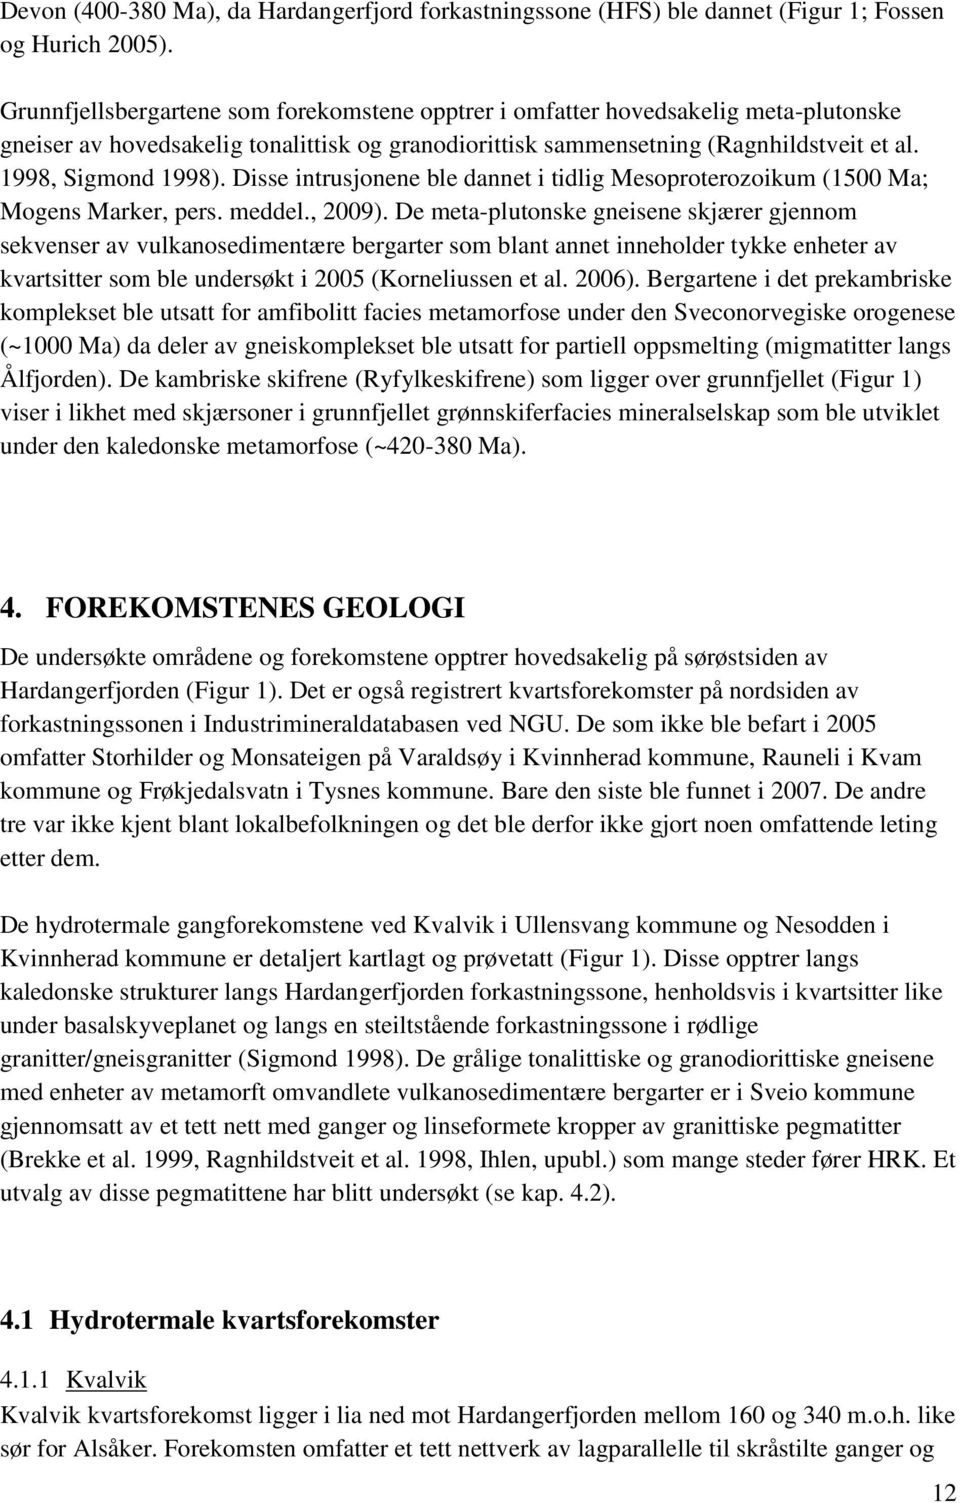 Disse intrusjonene ble dannet i tidlig Mesoproterozoikum (1500 Ma; Mogens Marker, pers. meddel., 2009).